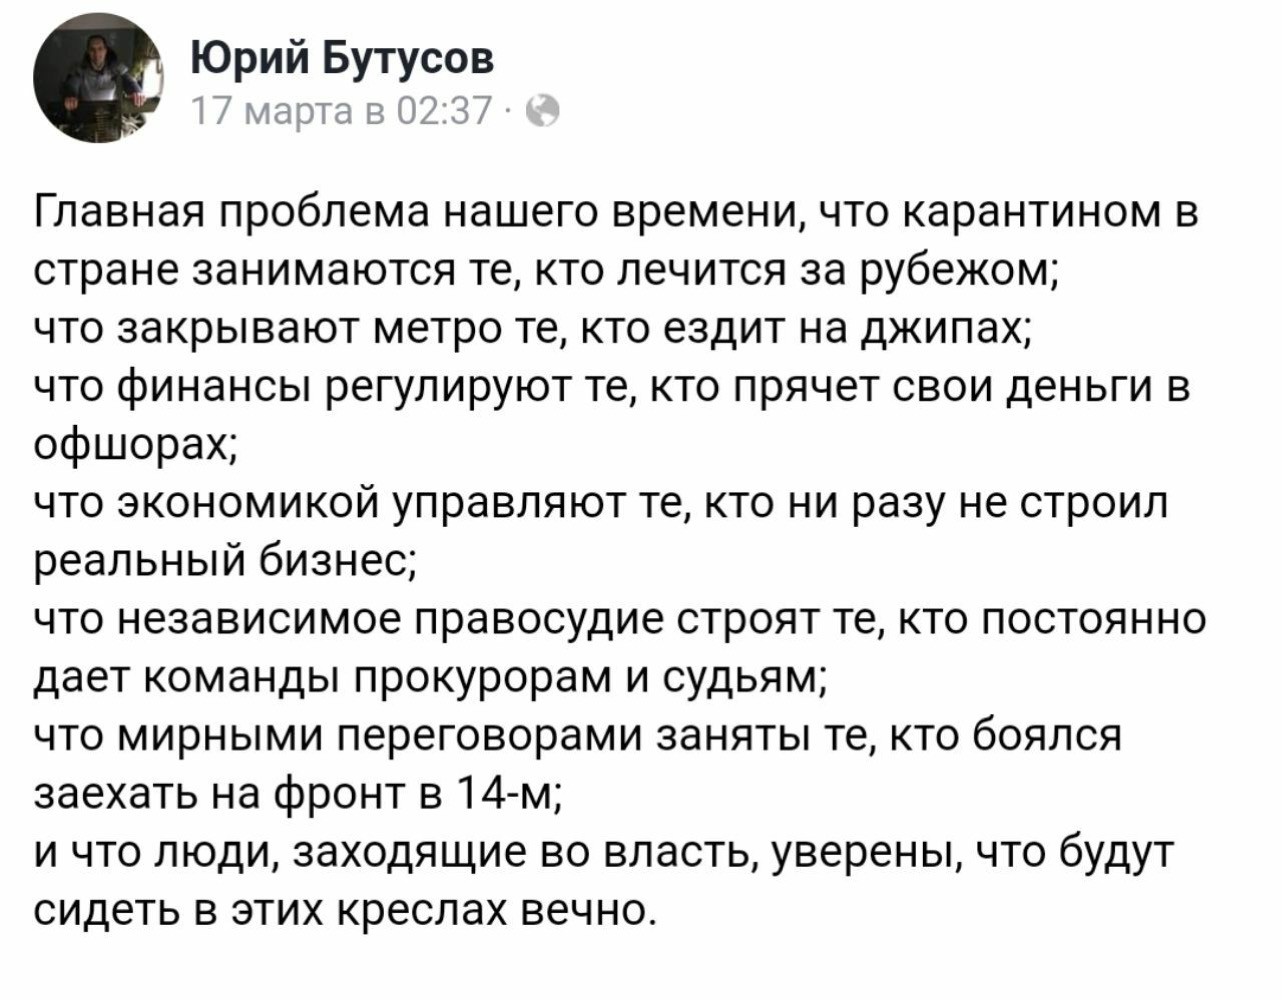 Юрий Бутусов очень верно о ситуации стране 